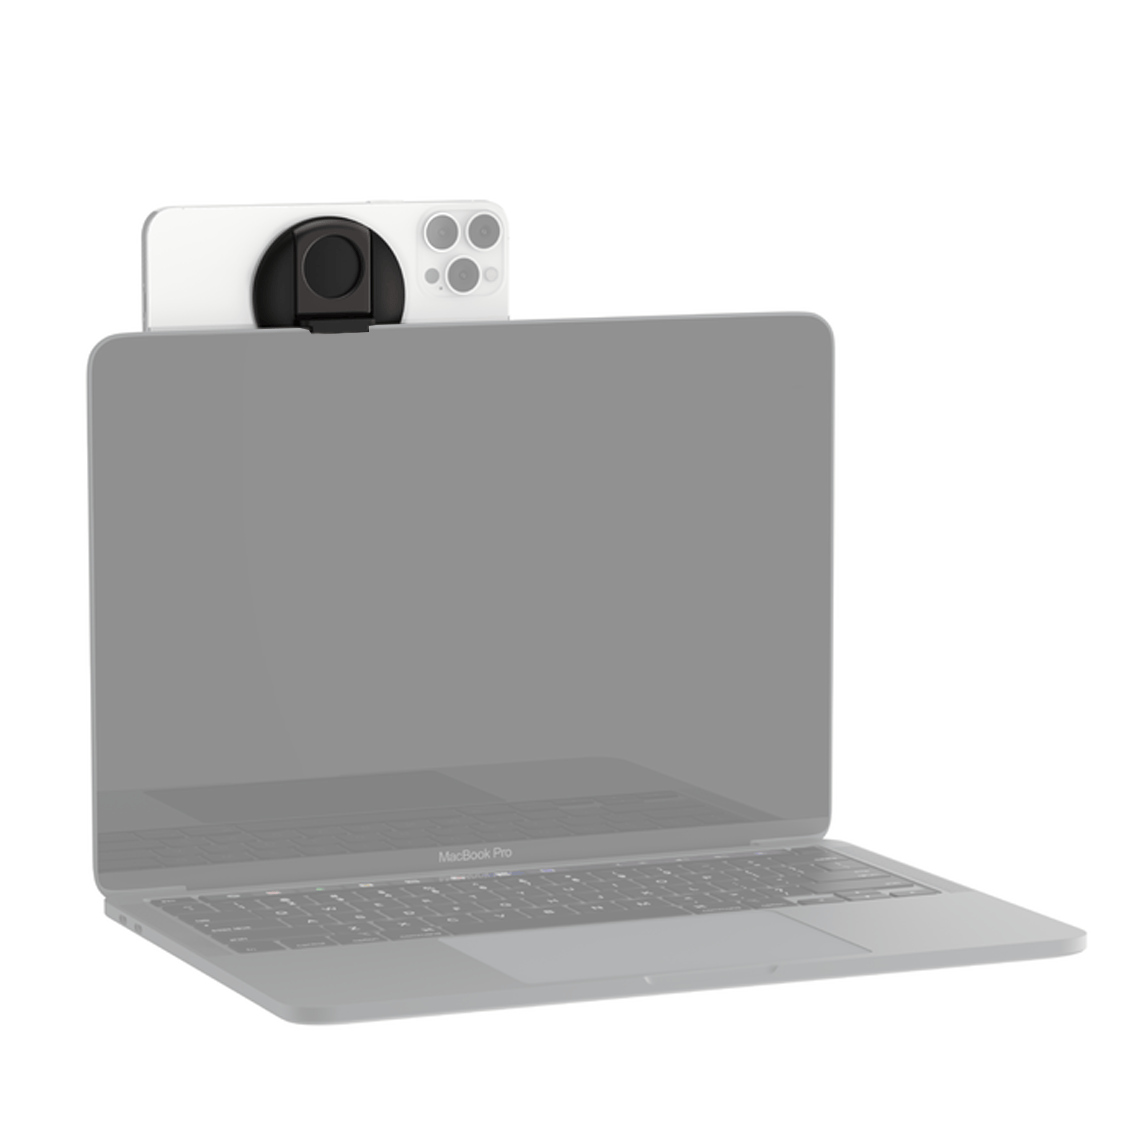 Soporte de iPhone con MagSafe de Belkin para portátiles Mac - Apple (ES)